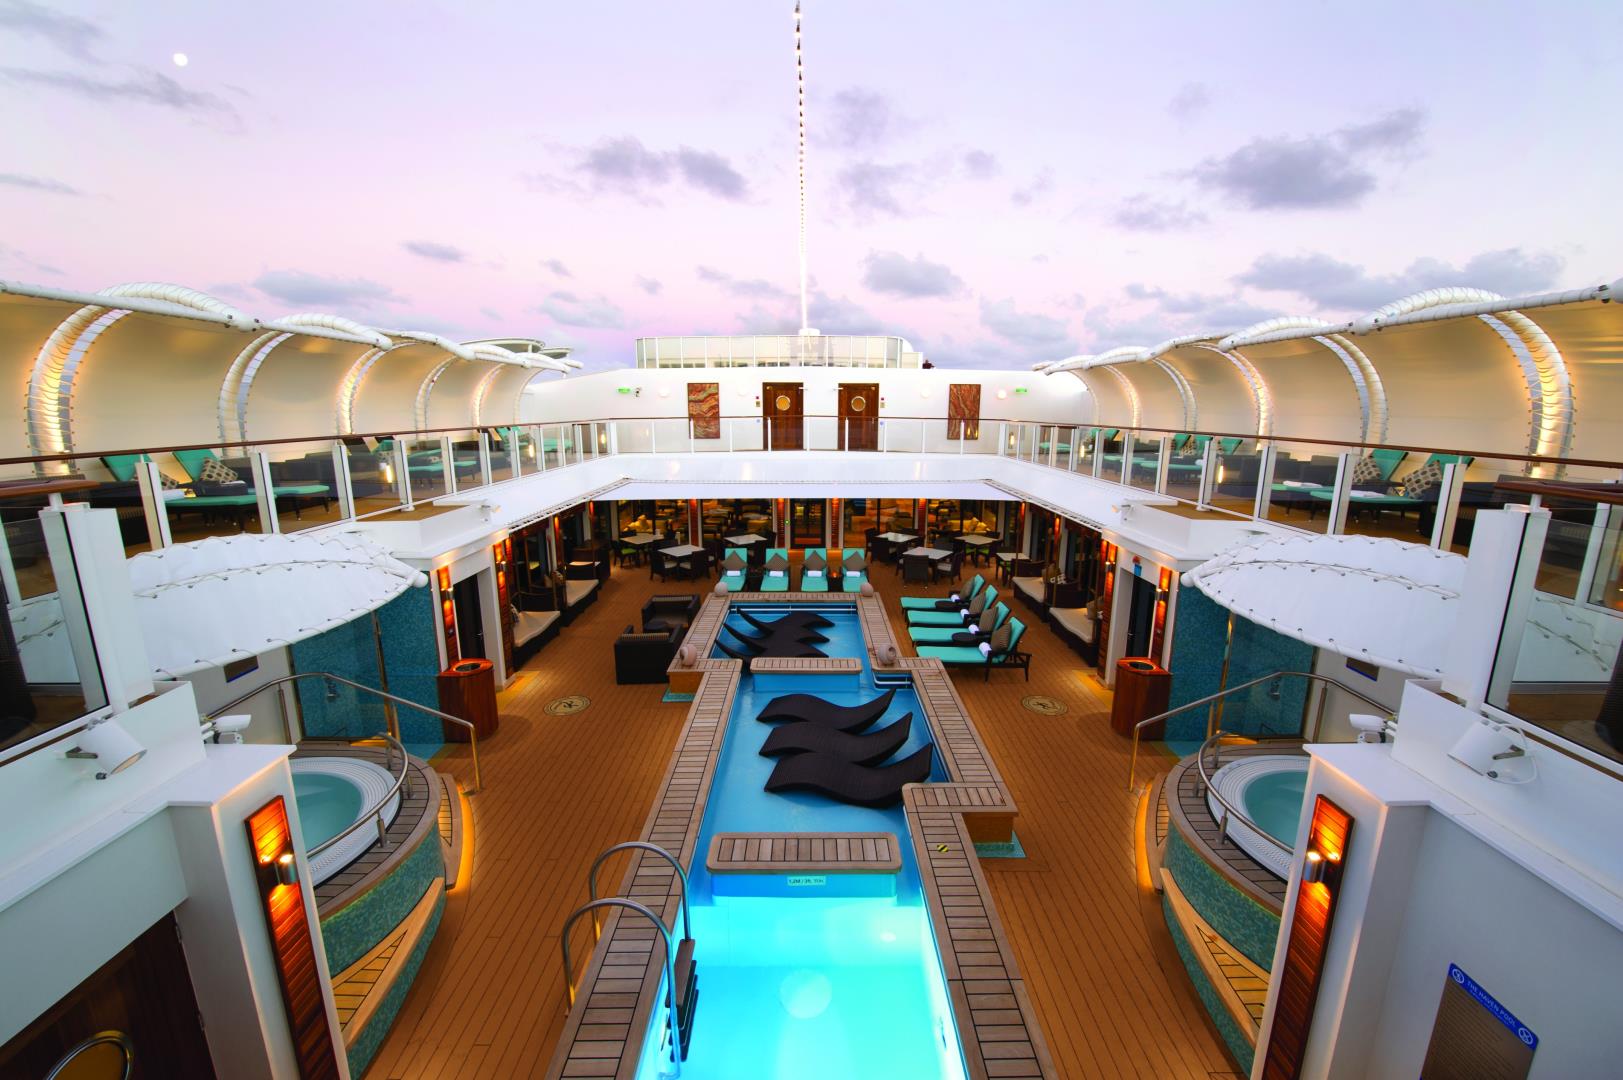 7-day Cruise to Bermuda from New York, New York on Norwegian Getaway